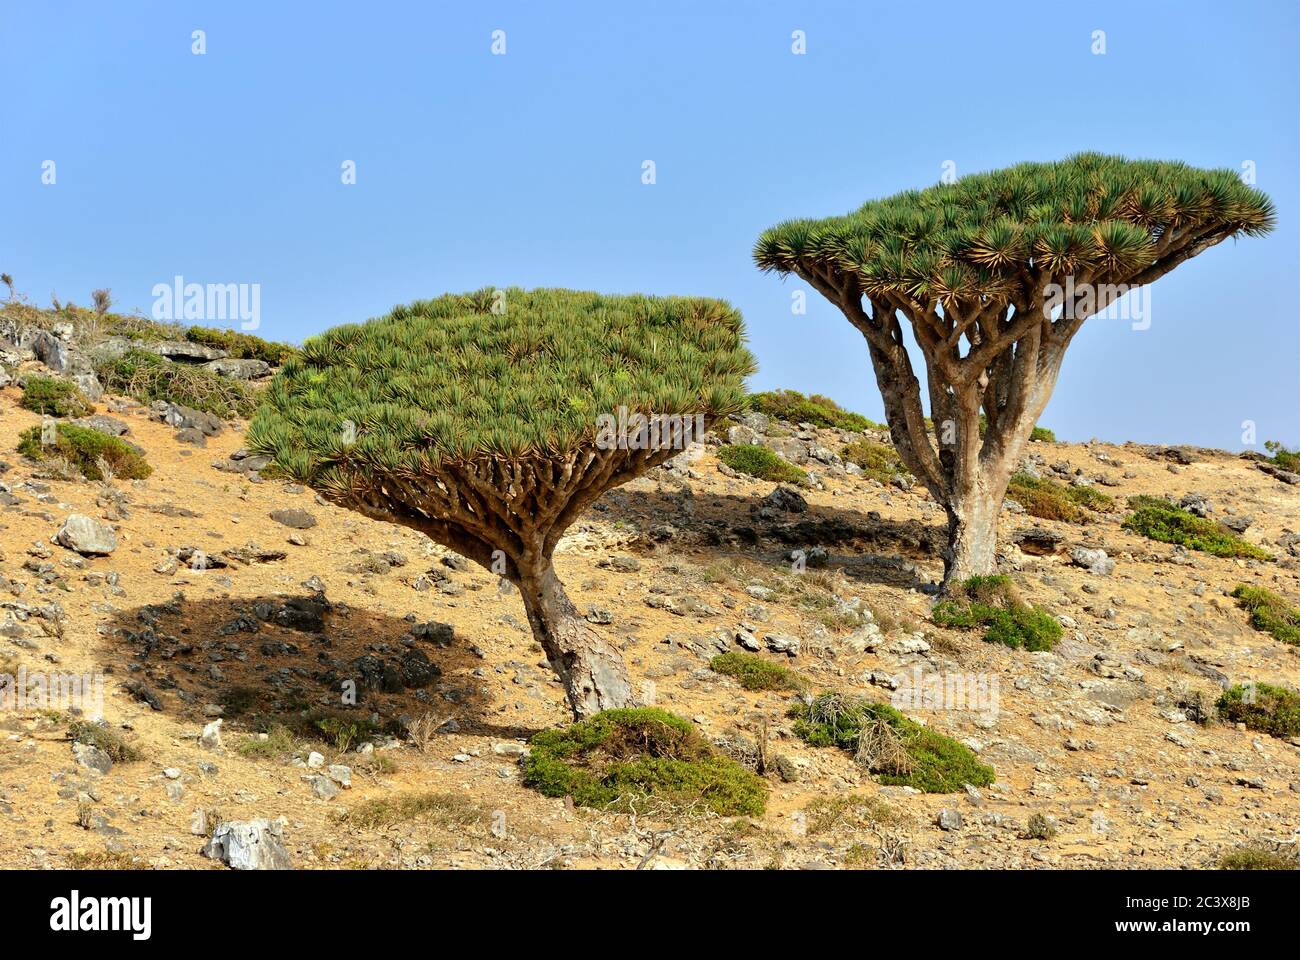 Endemische Pflanze Drachenblut Baum auf der Insel Socotra, Jemen  Stockfotografie - Alamy